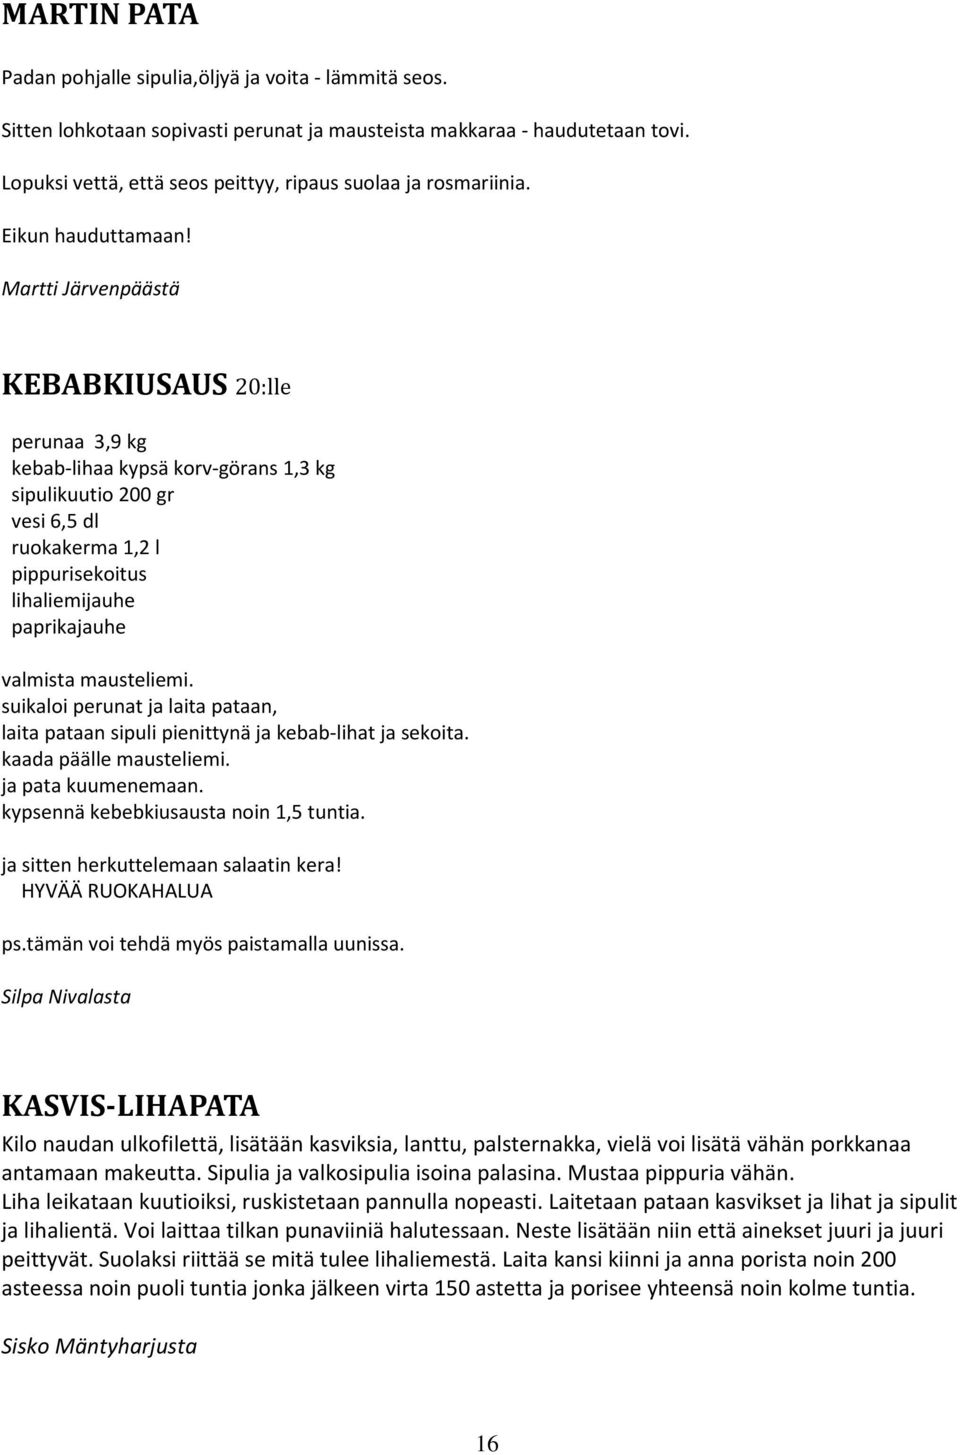 Martti Järvenpäästä KEBABKIUSAUS 20:lle perunaa 3,9 kg kebab-lihaa kypsä korv-görans 1,3 kg sipulikuutio 200 gr vesi 6,5 dl ruokakerma 1,2 l pippurisekoitus lihaliemijauhe paprikajauhe valmista